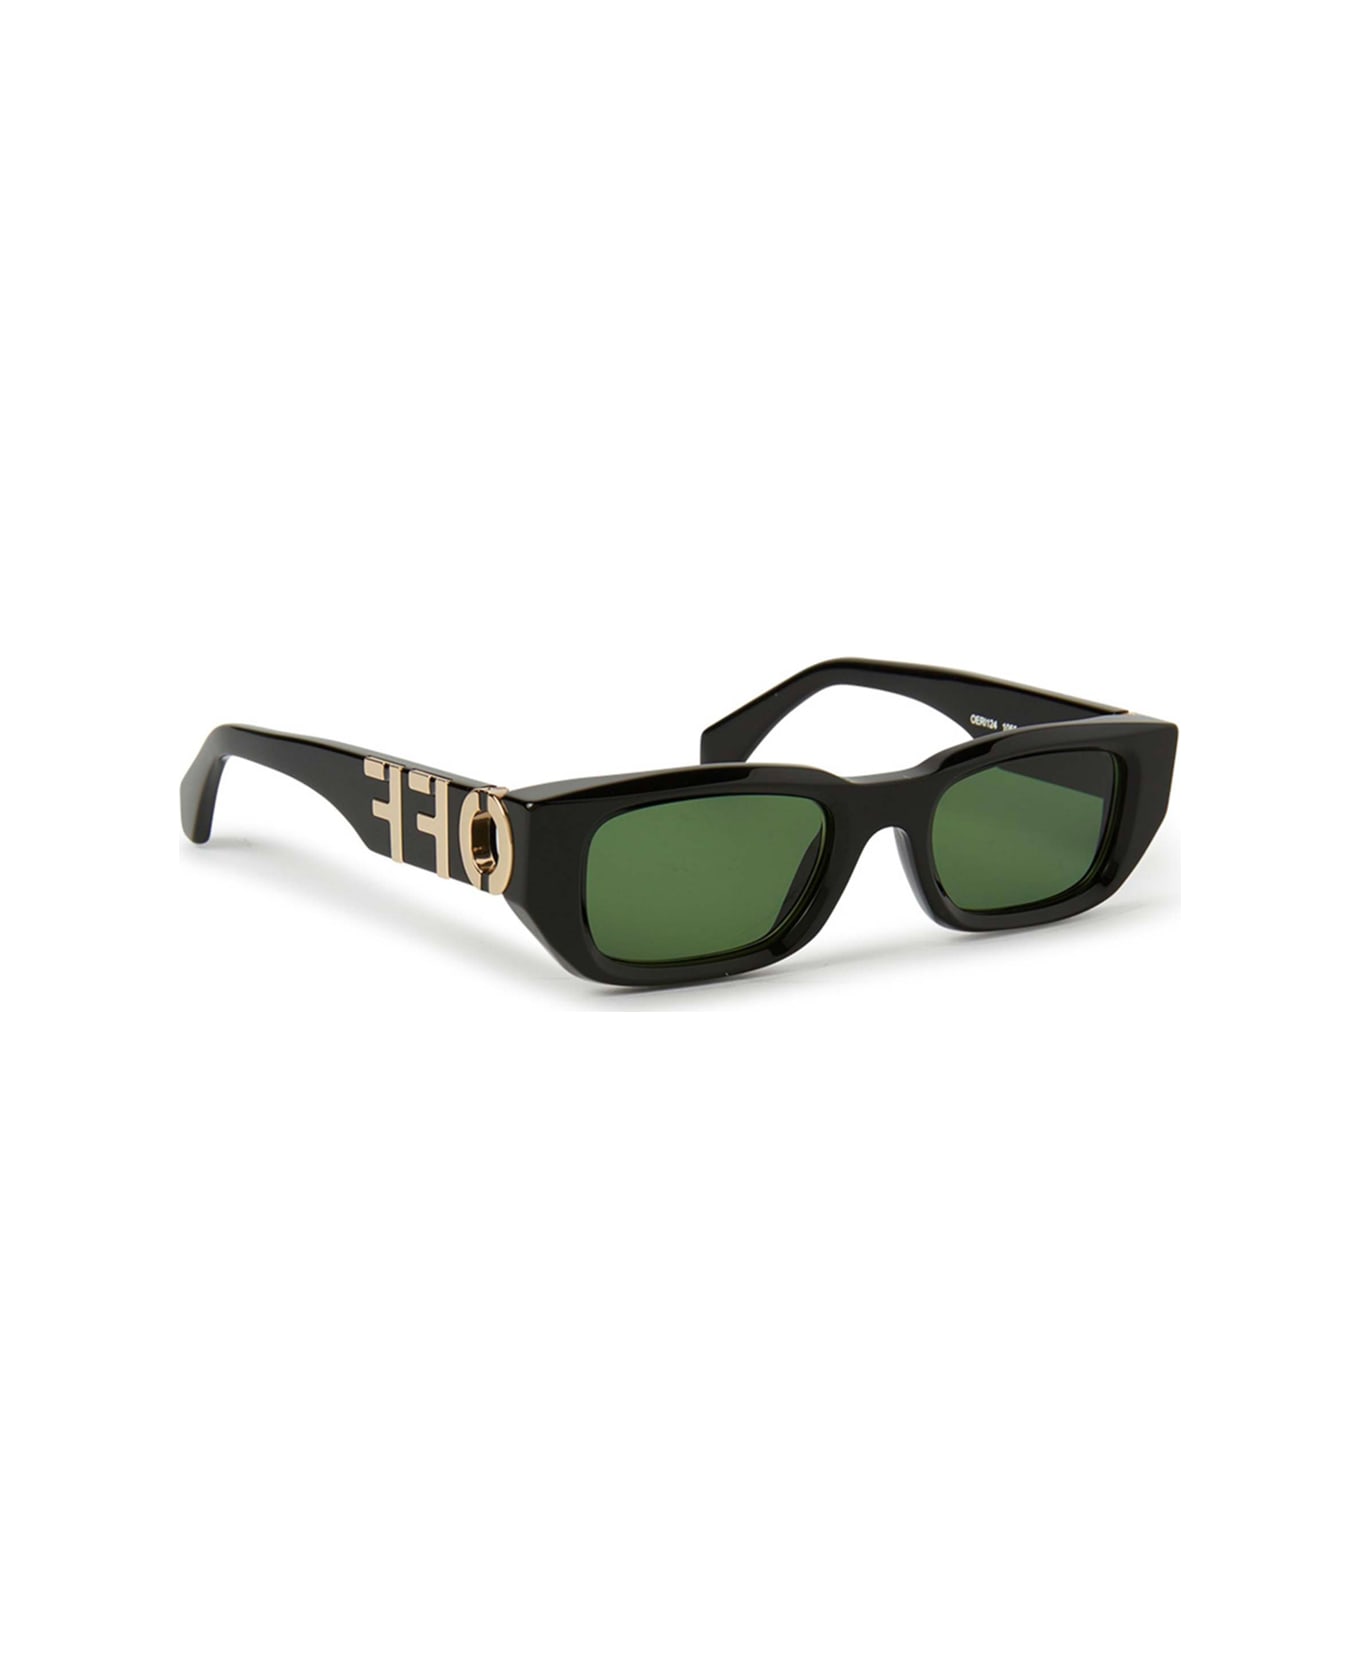 Off-White Oeri124 Fillmore 1055 Black Green Sunglasses - Nero サングラス